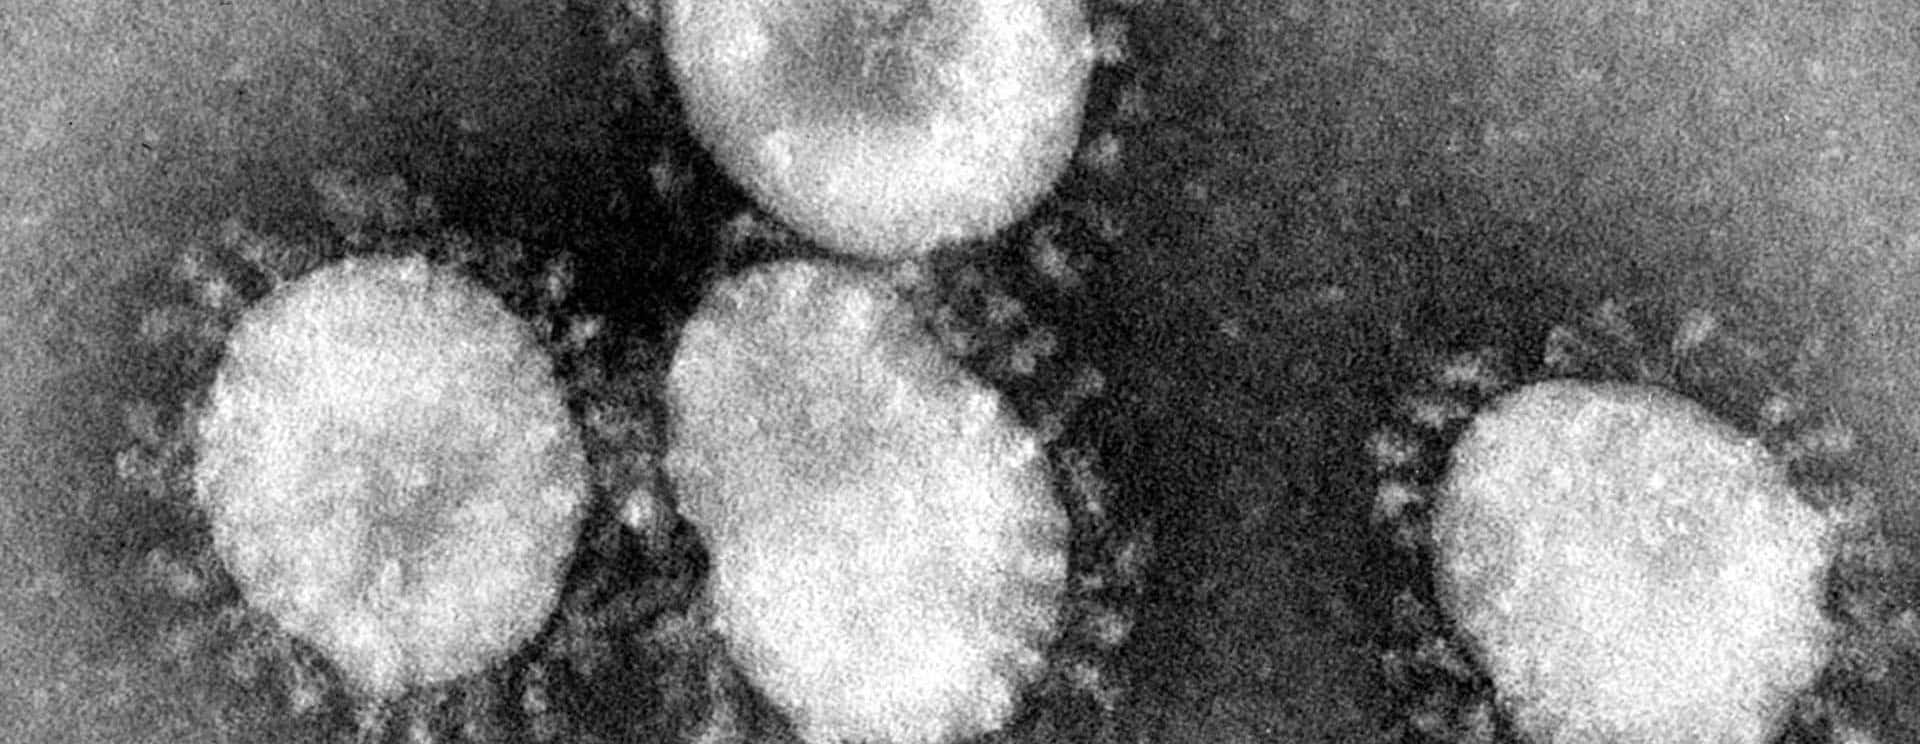 coronaviruses-jpg-29